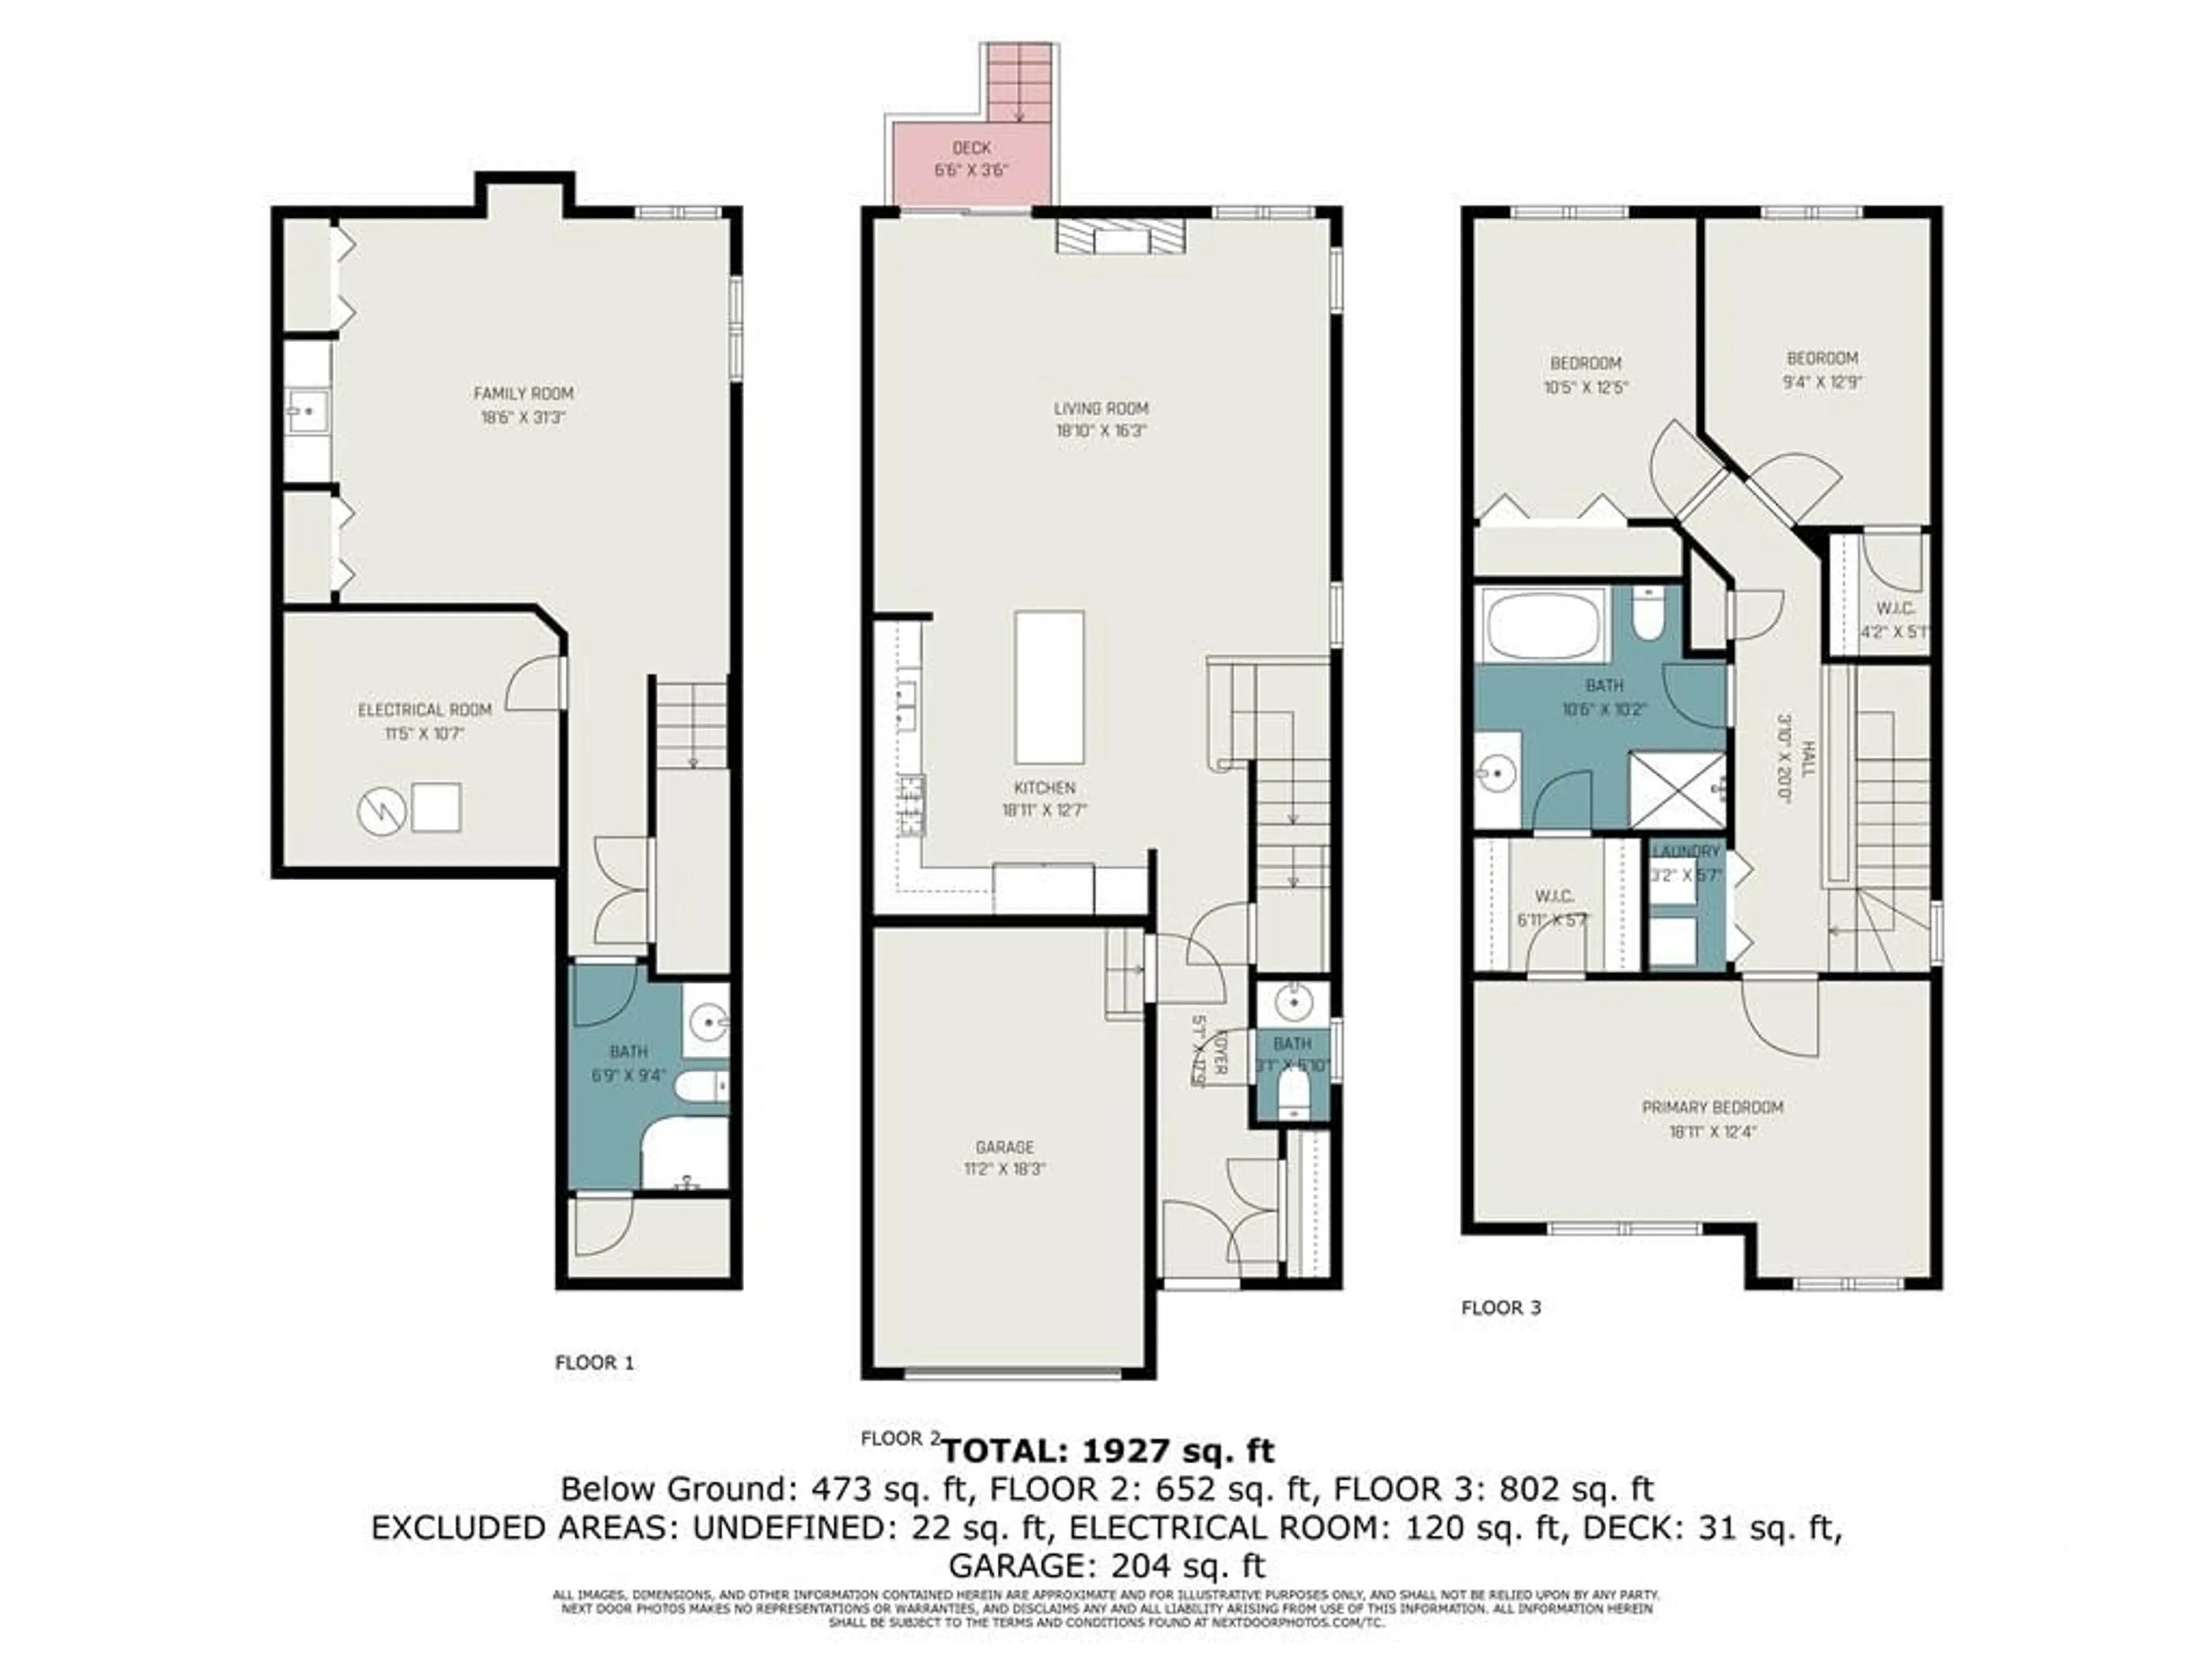 Floor plan for 283 KING St, Carleton Place Ontario K7C 2J5